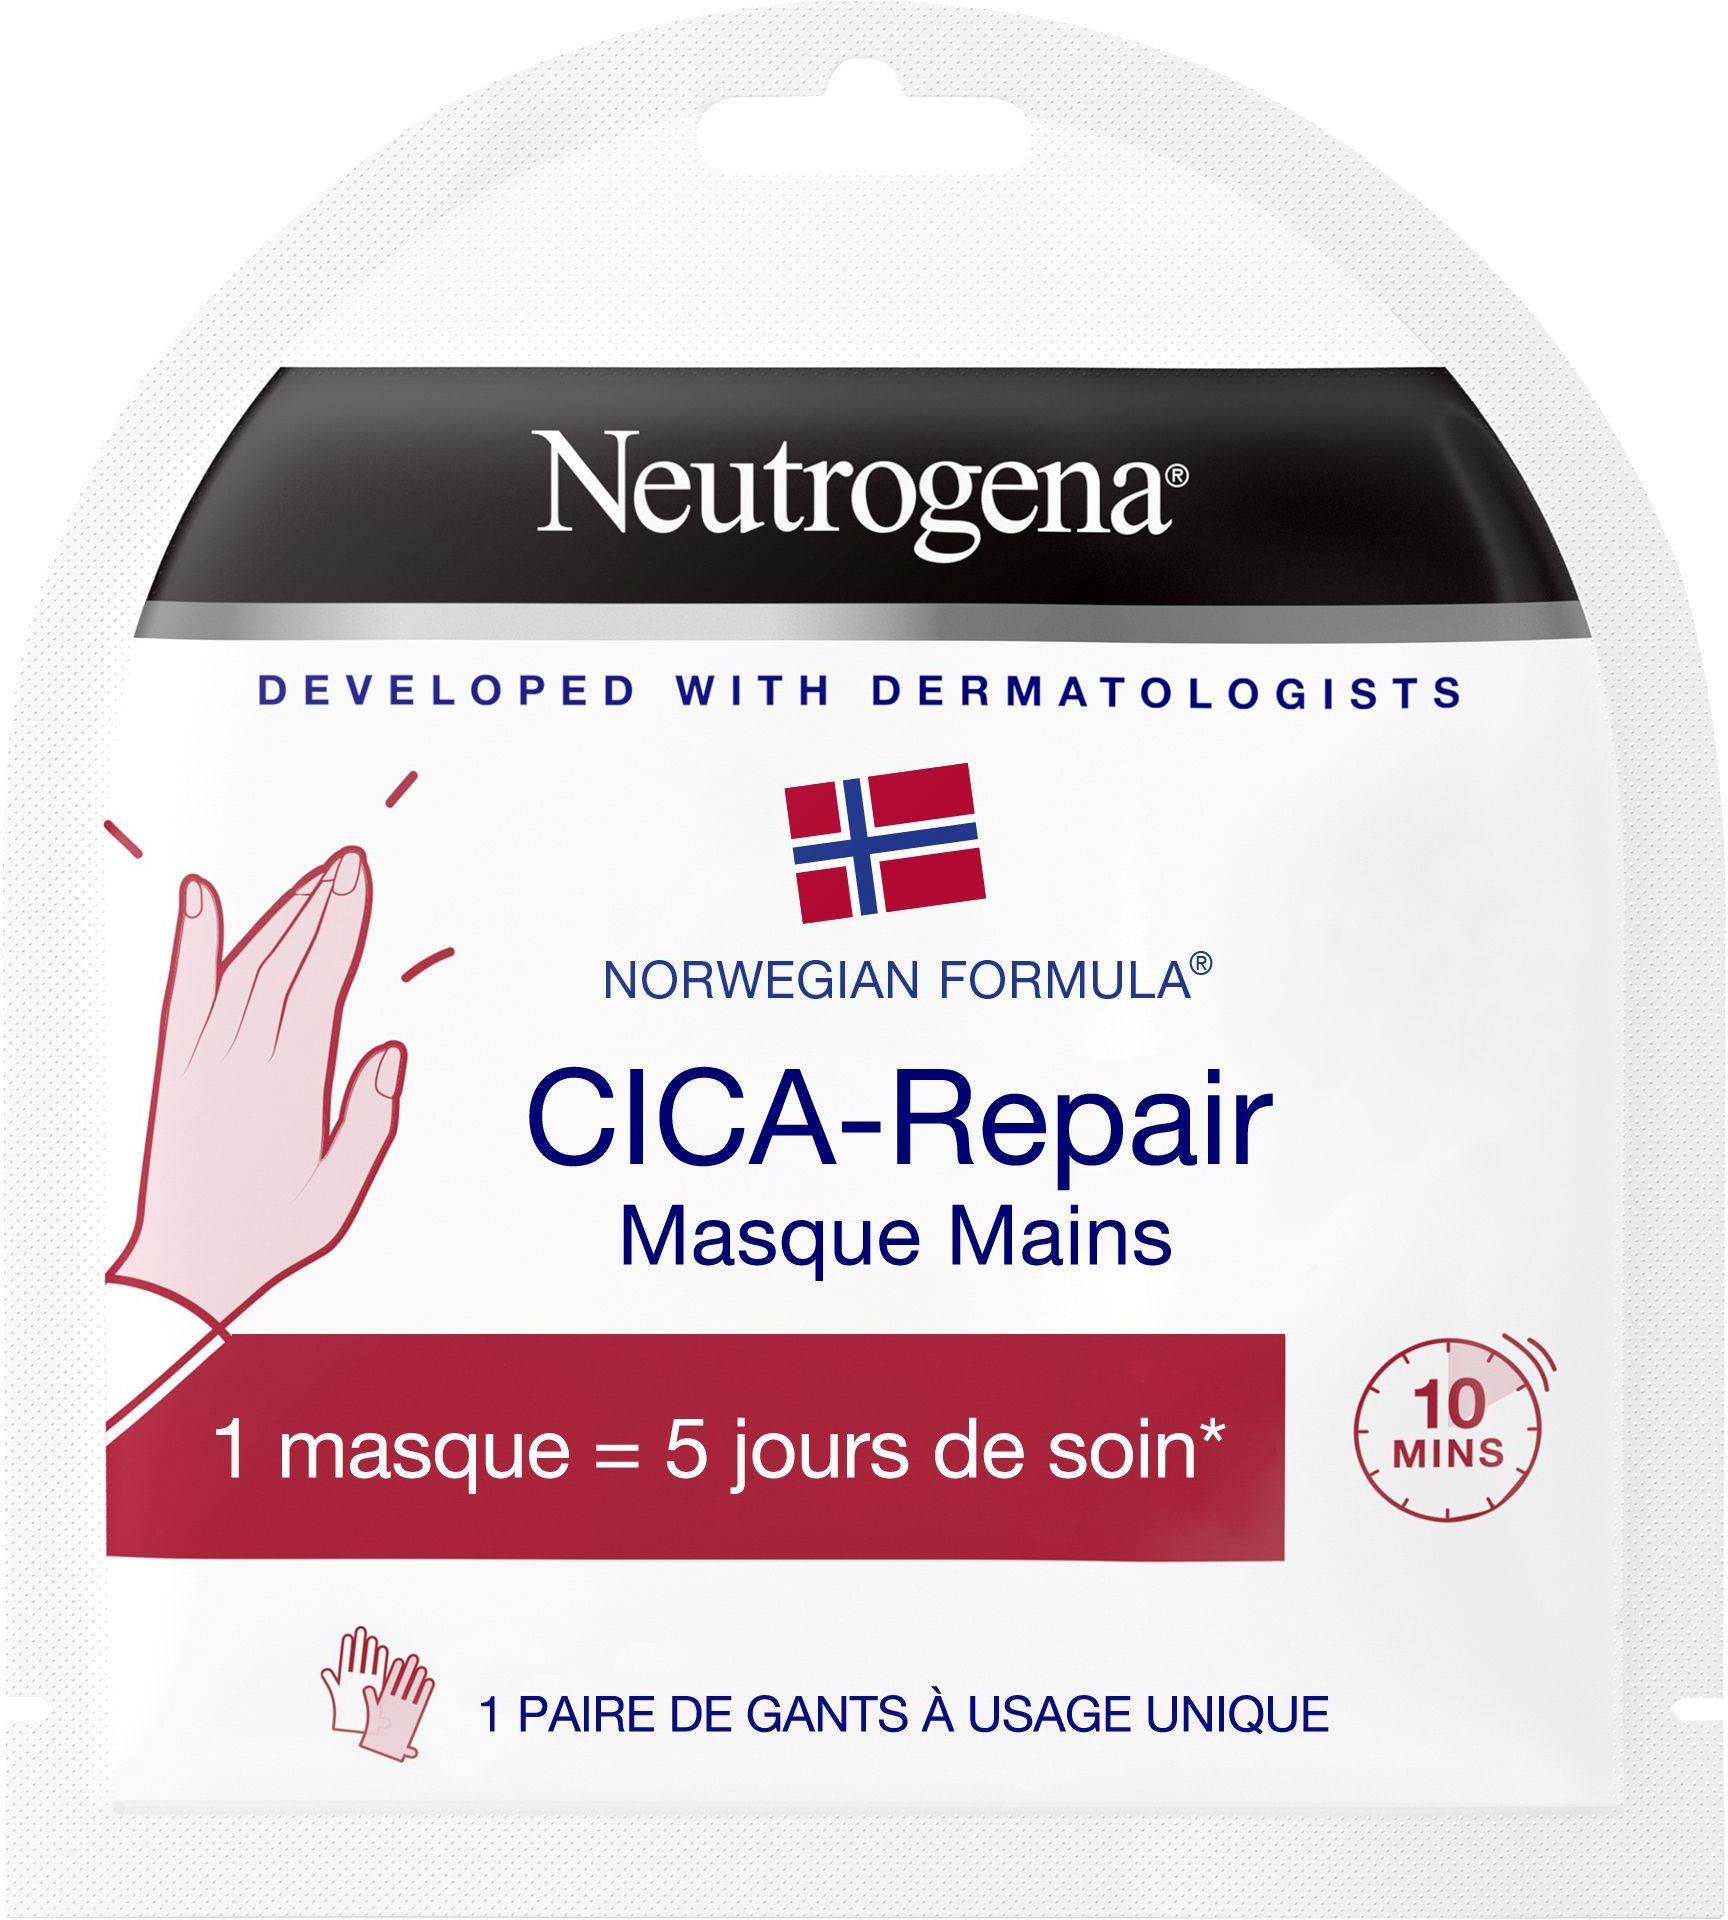 Neutrogena,Formule Norvégienne,Masque mains CICA-Repair 2 pc(s) crème